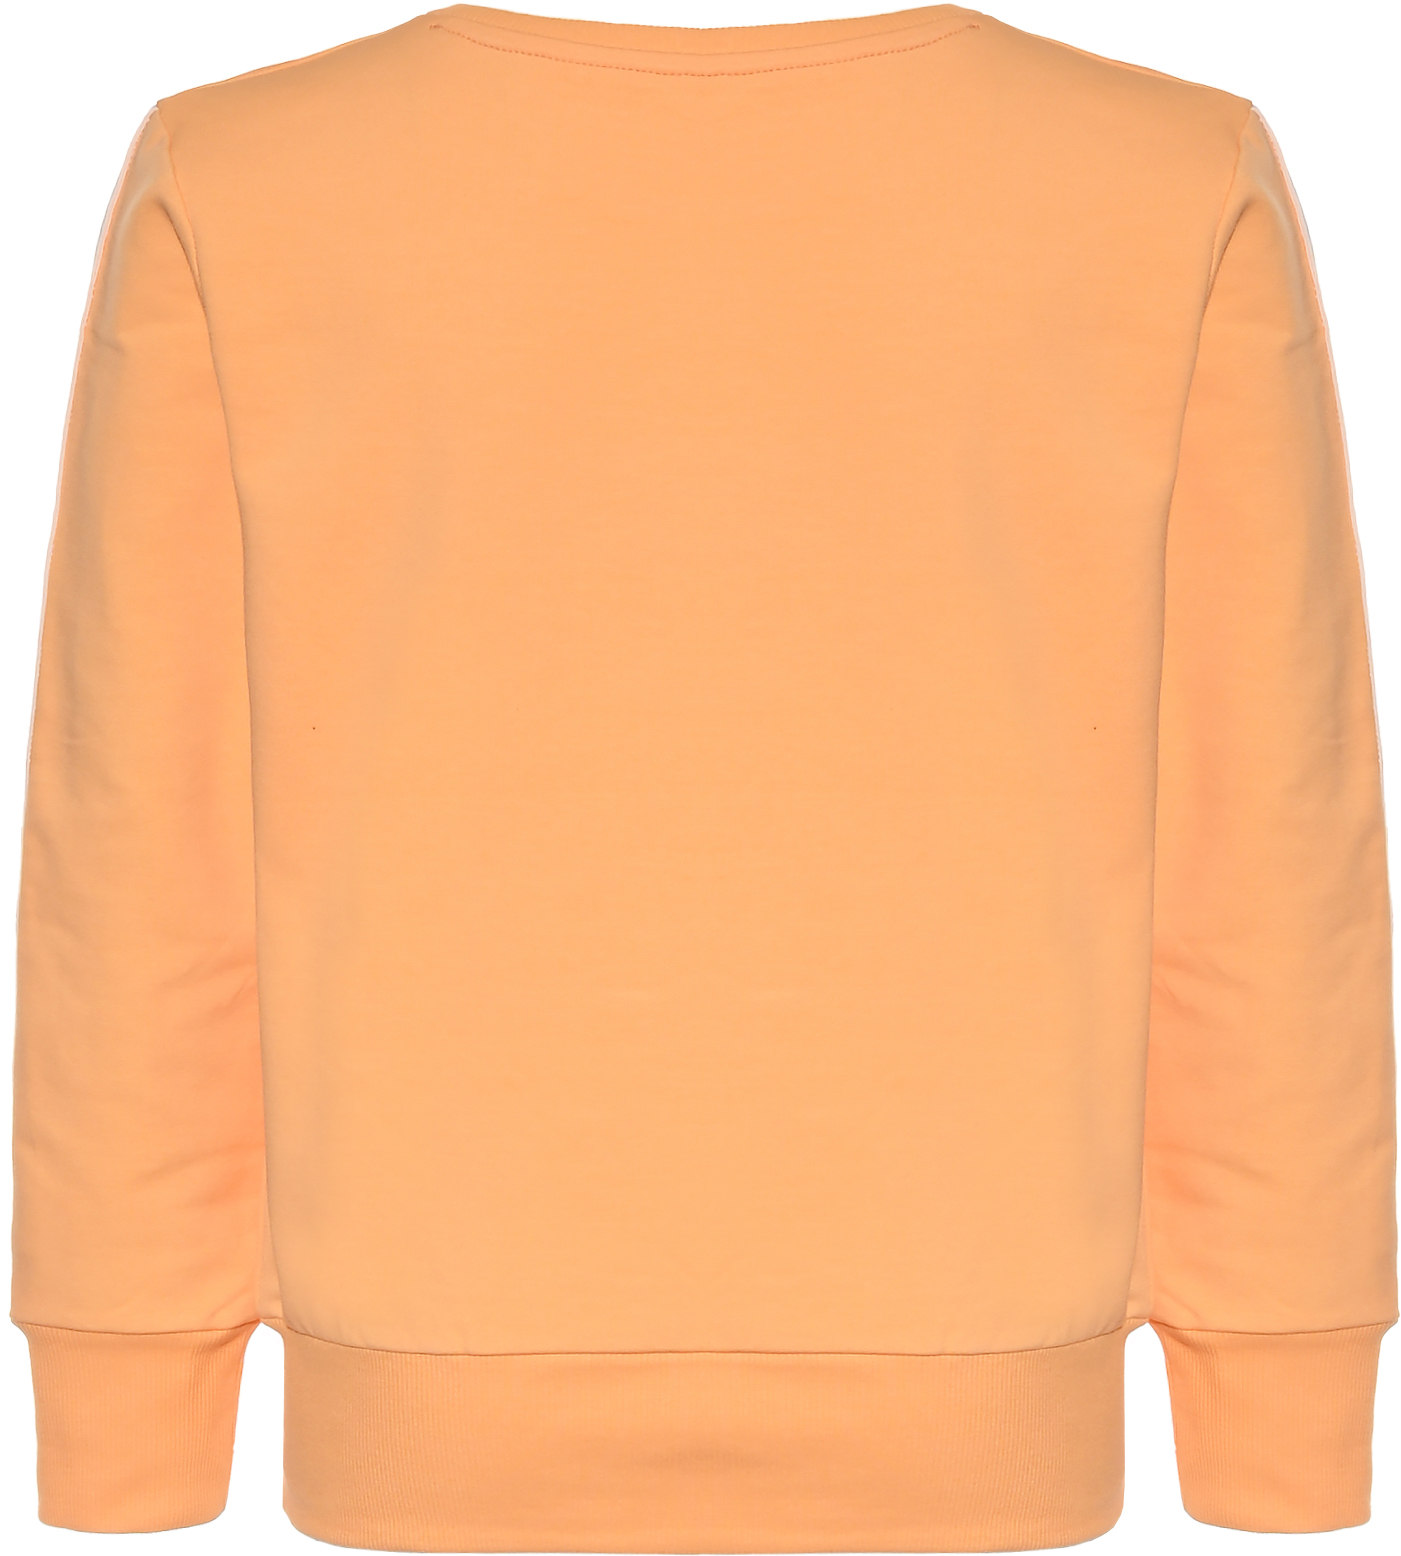 5630-Girls Boxy Sweatshirt -Memorable